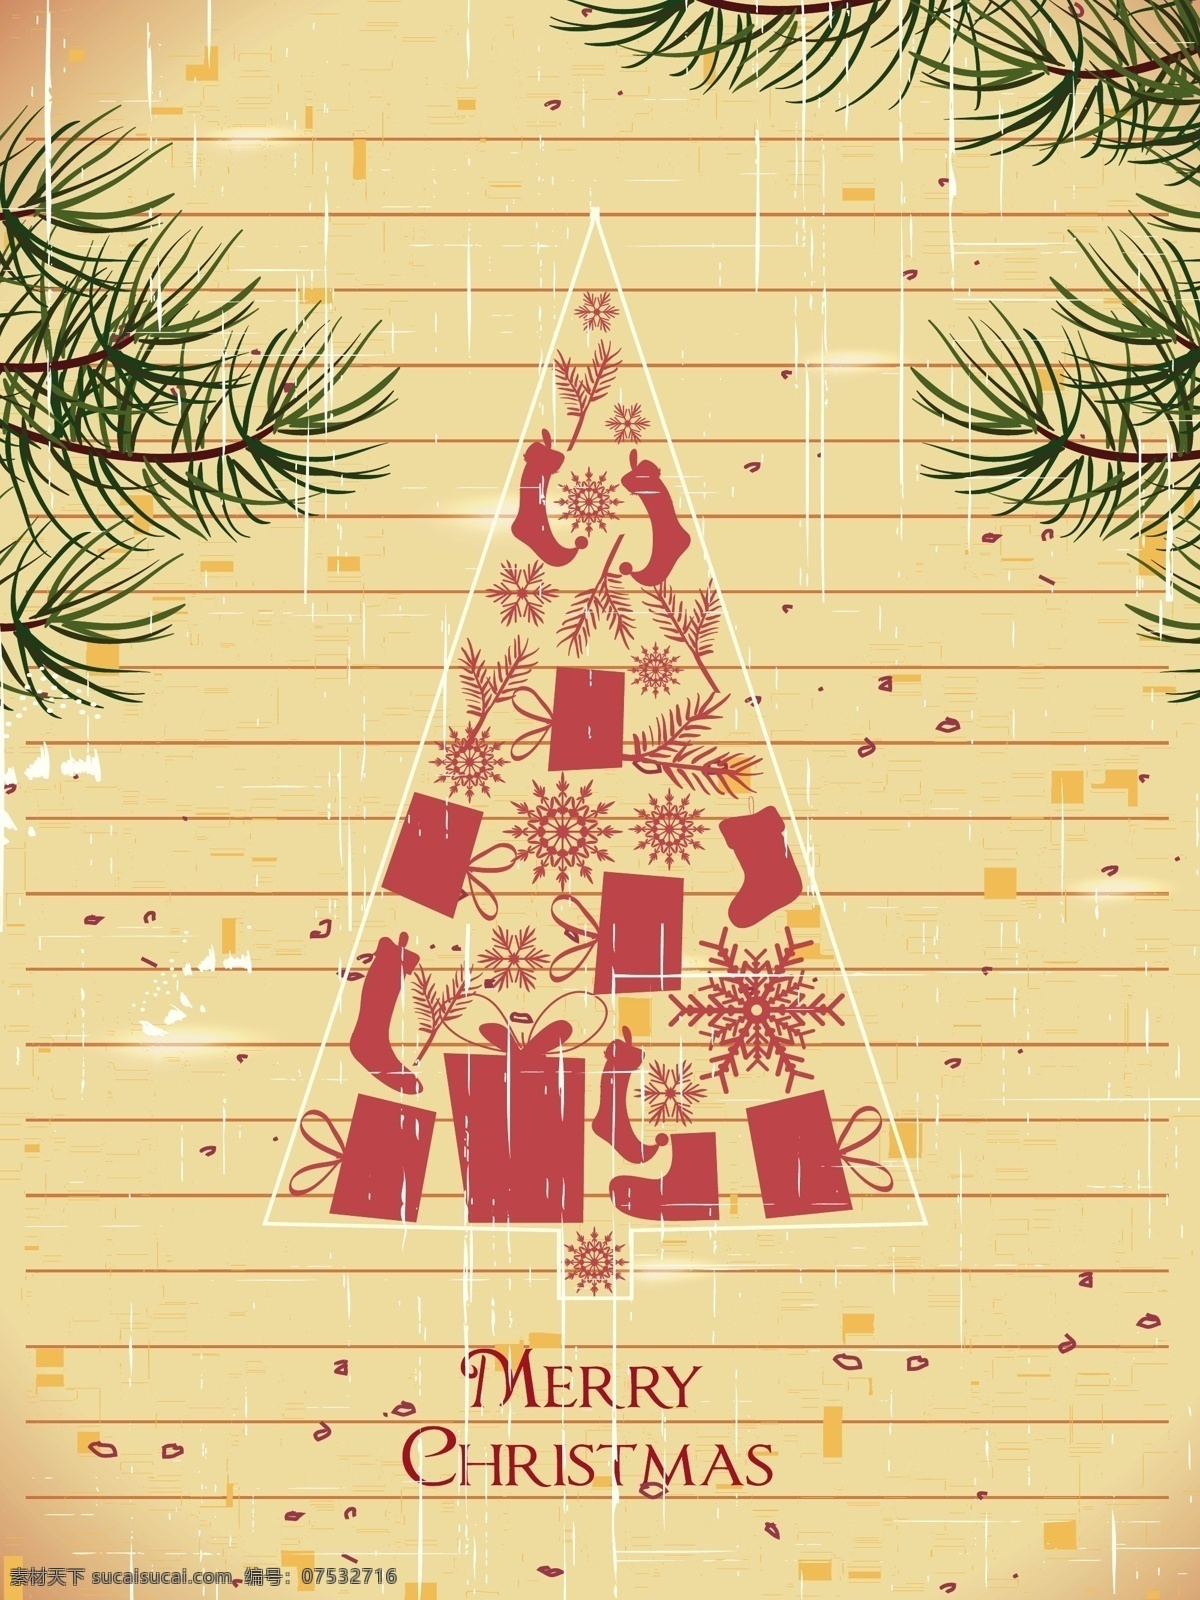 矢量 创意 圣诞 卡片 创意卡片 圣诞节卡片 条纹 雪花 圣诞树设计 节日素材